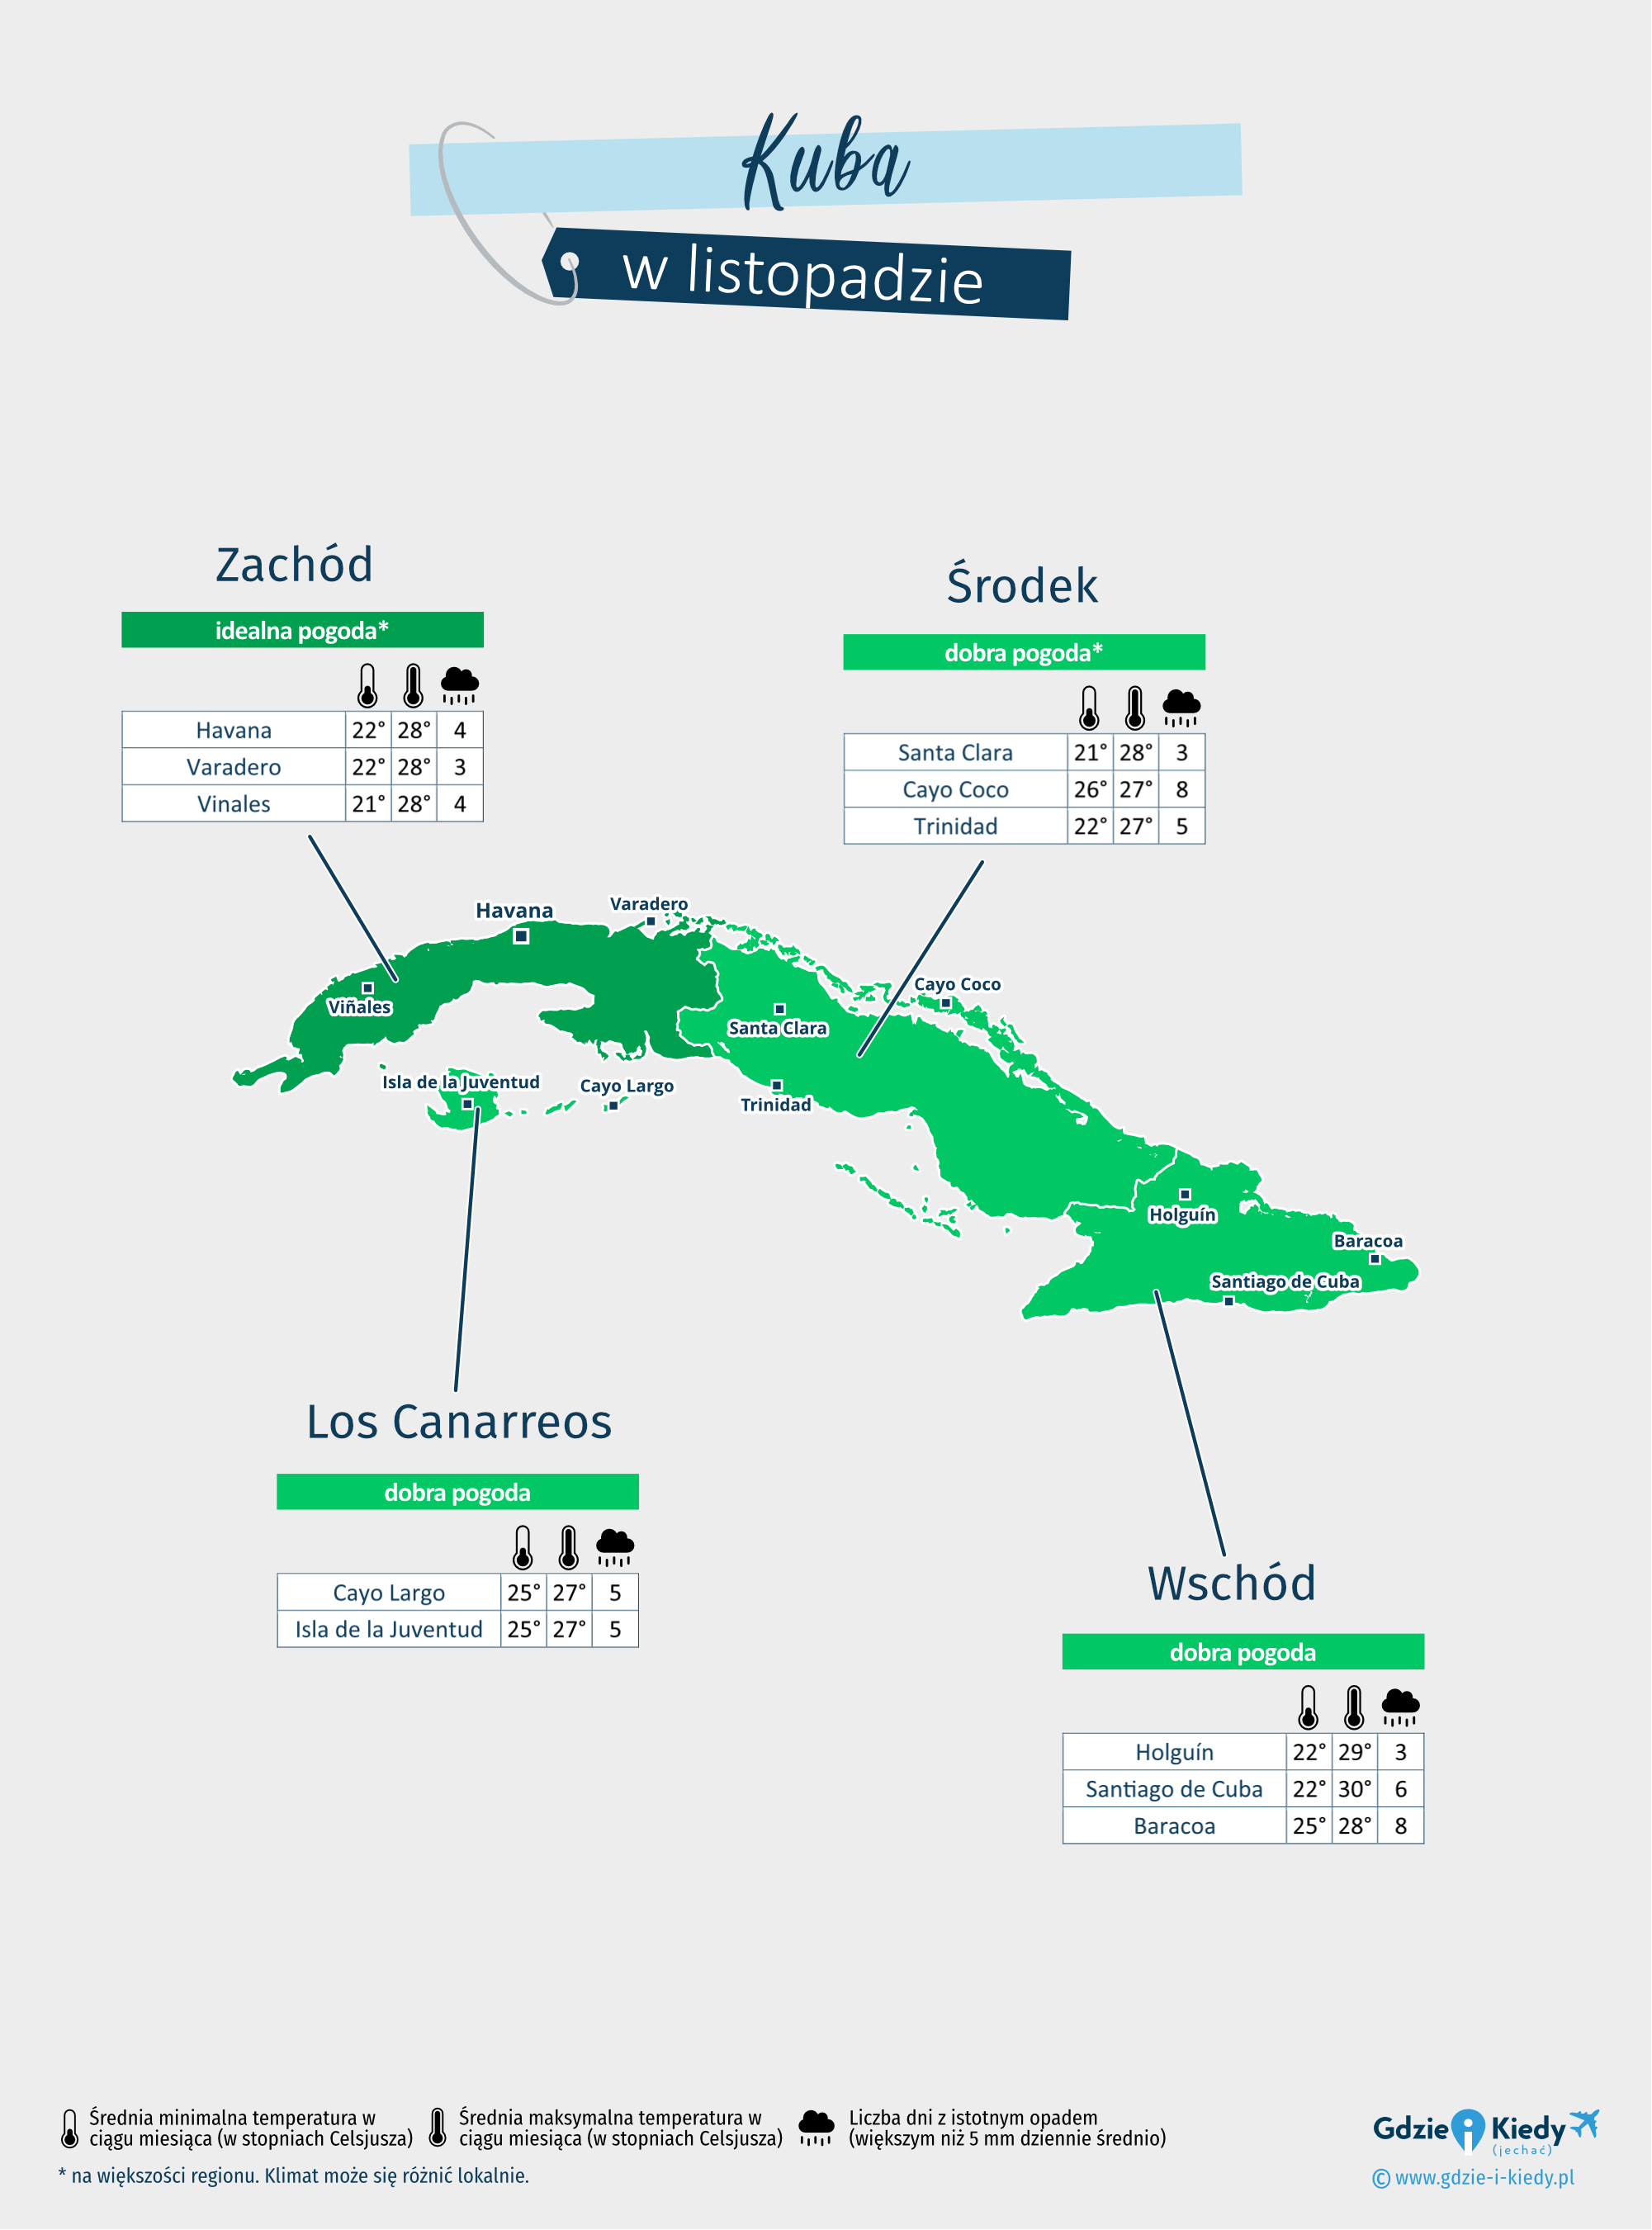 Kuba: mapa pogody w listopadzie w różnych regionach